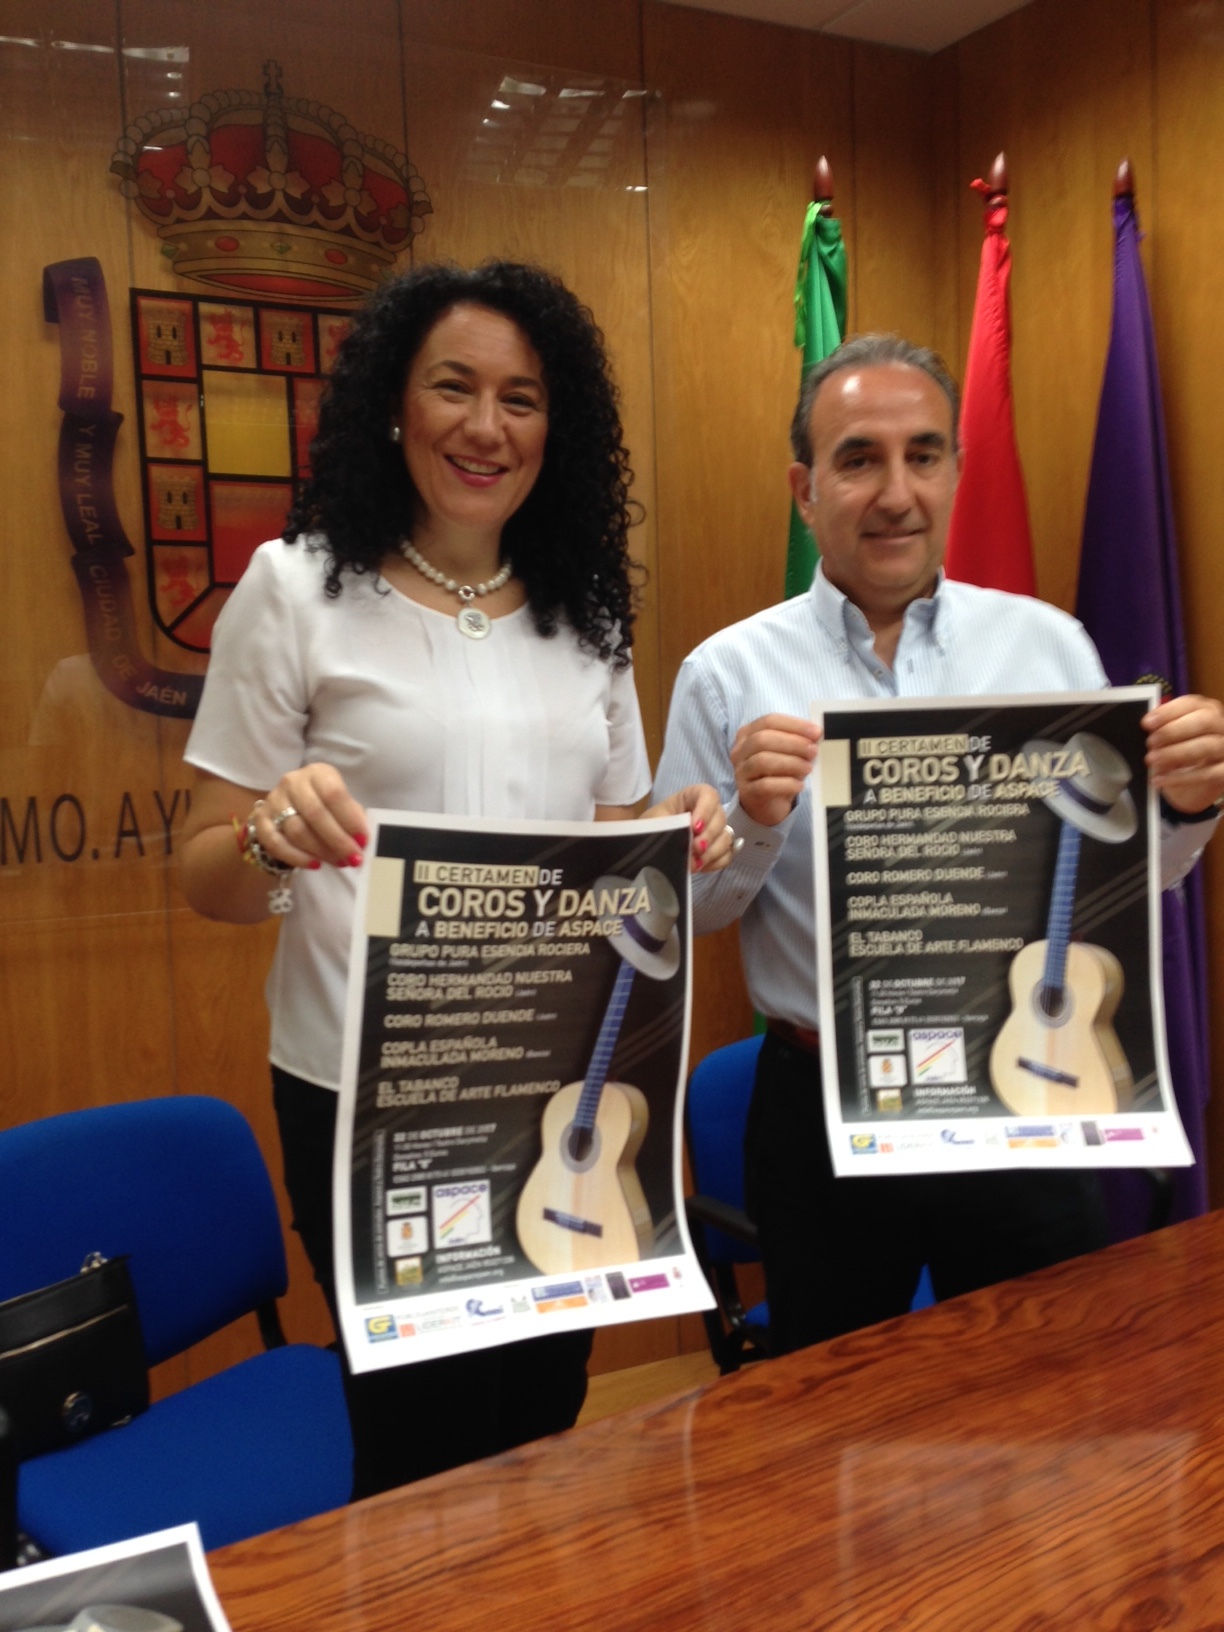 El Ayuntamiento presenta el II Certamen de Coros y Danzas a beneficio de Aspace